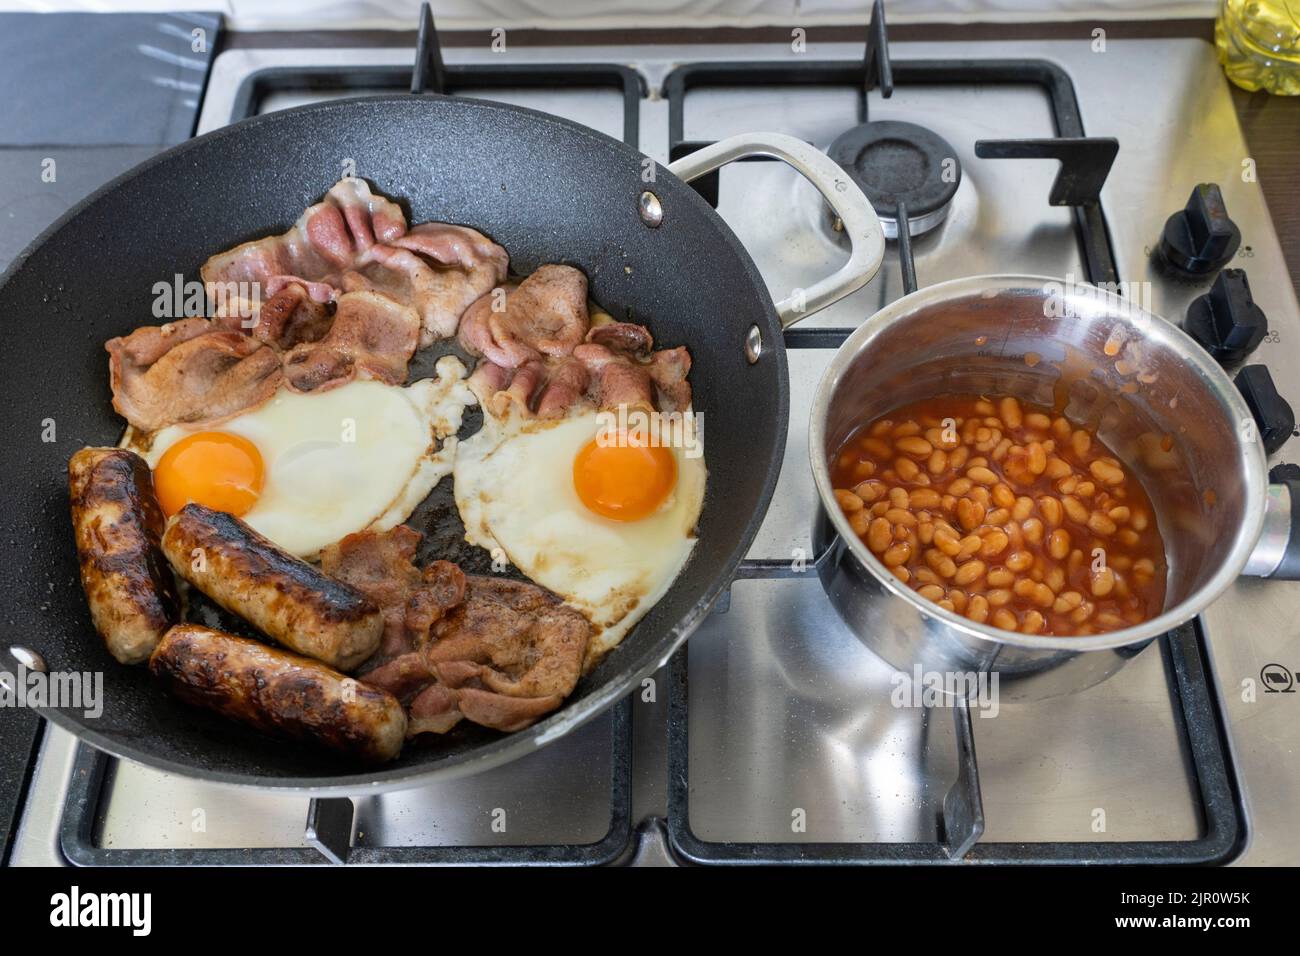 Desayuno inglés tradicional ingredientes para cocinar y freír en una cocina de gas. Bacon, huevos, salchichas y judías. Reino Unido. Concepto - harinas grasas Foto de stock